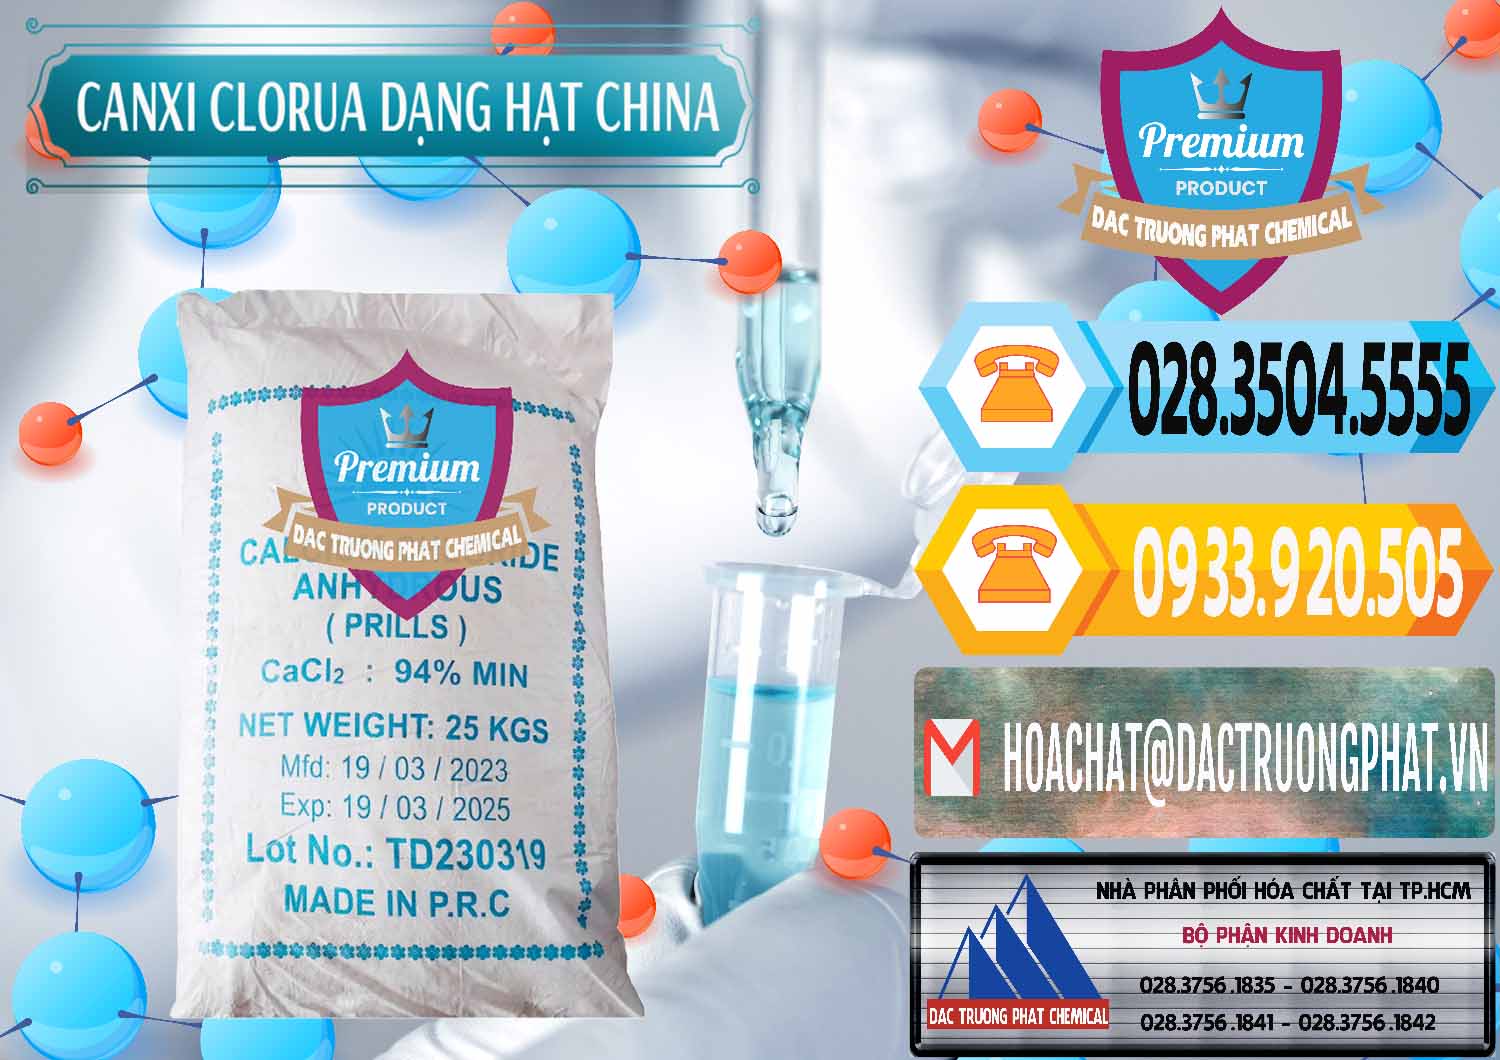 Cty bán và cung cấp CaCl2 – Canxi Clorua 94% Dạng Hạt Trung Quốc China - 0373 - Đơn vị chuyên nhập khẩu và cung cấp hóa chất tại TP.HCM - hoachattayrua.net